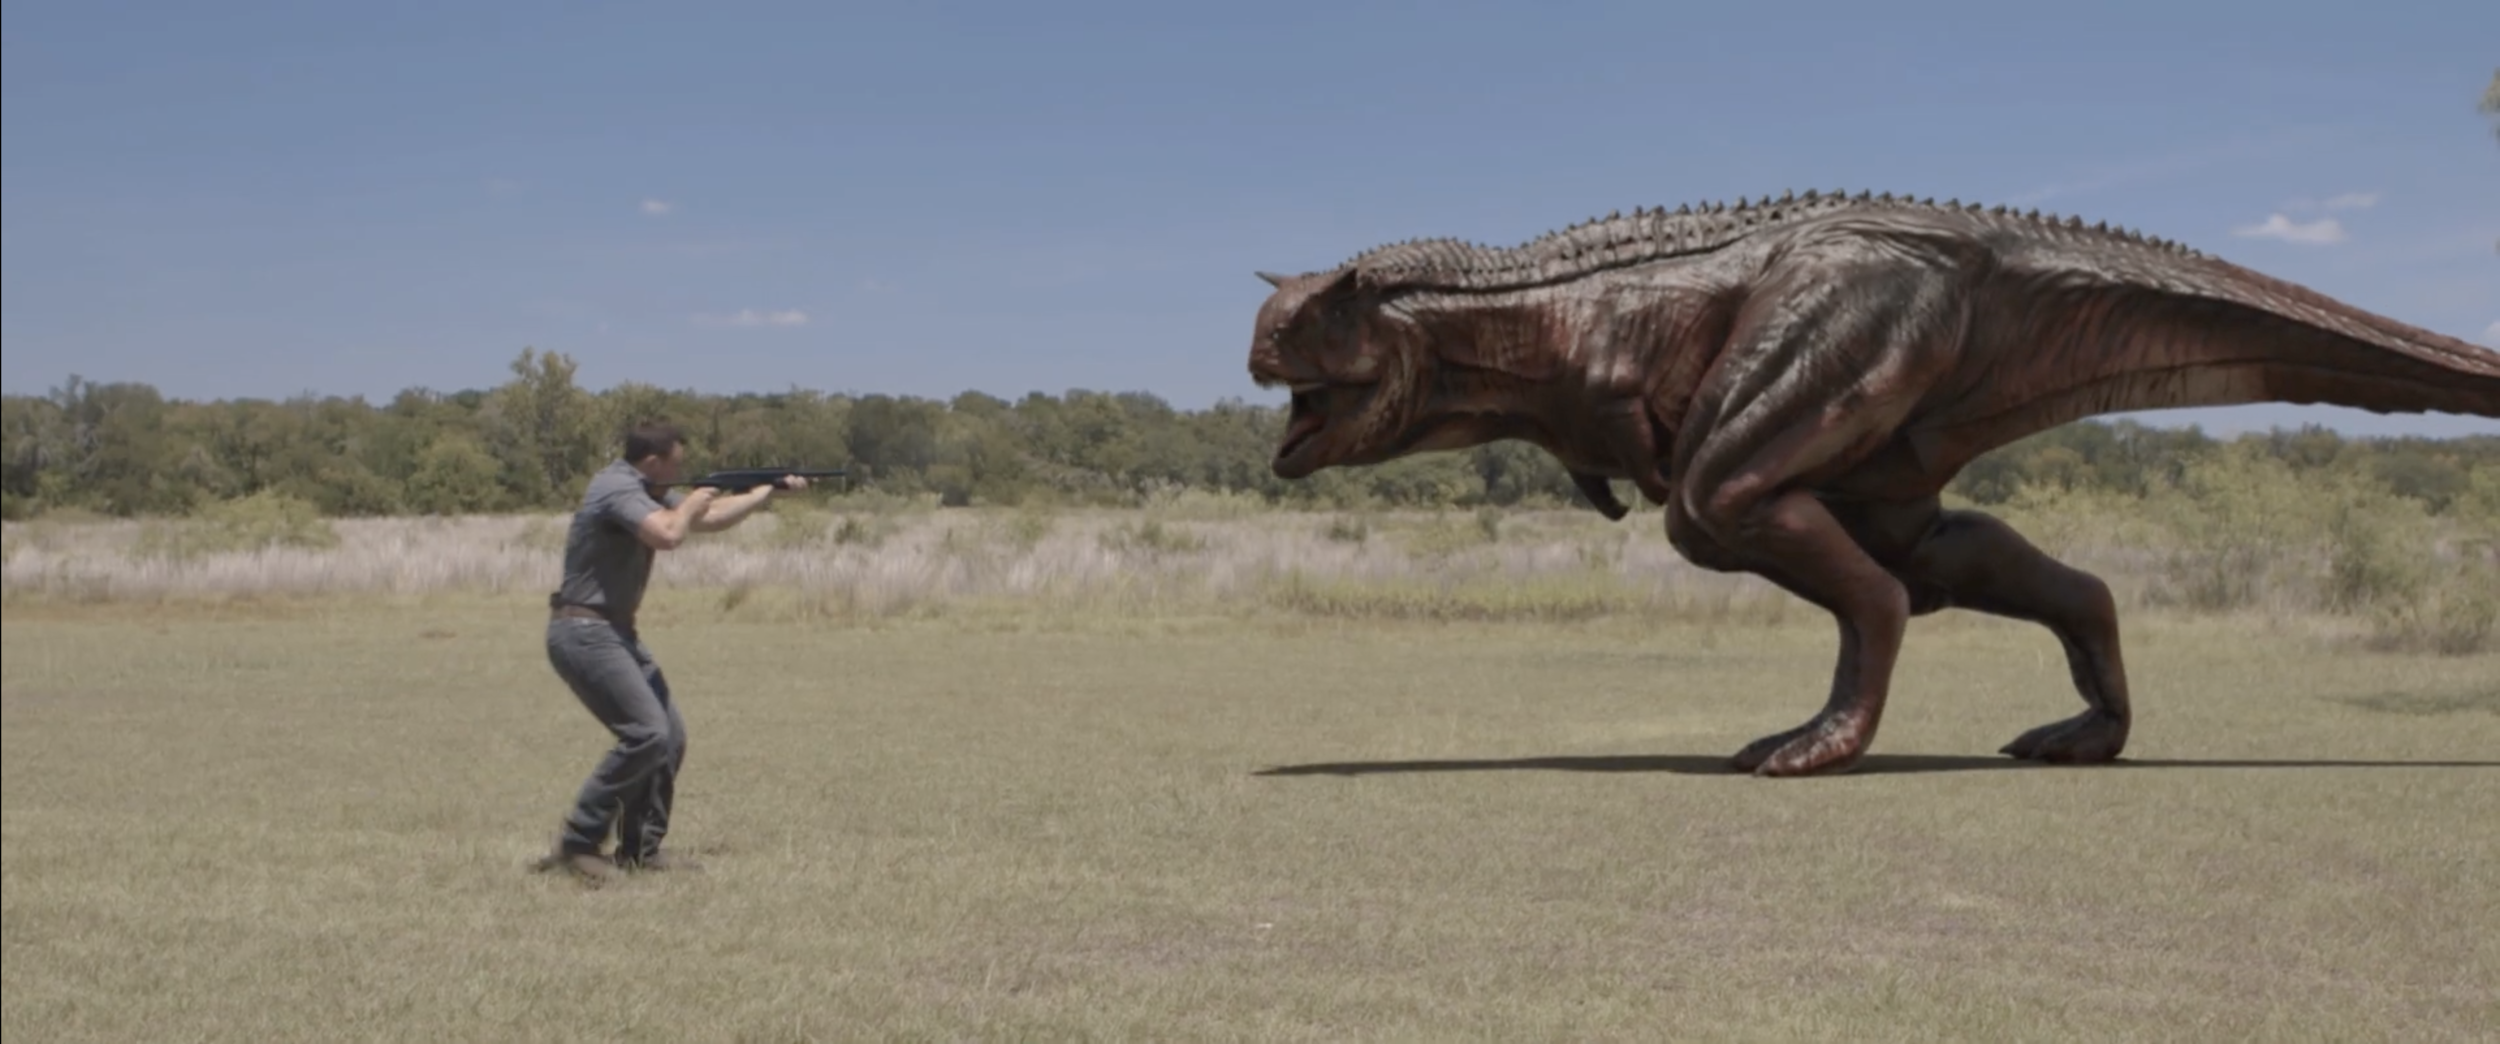 Ковбои против динозавров 2015. Парк Юрского периода Грант.